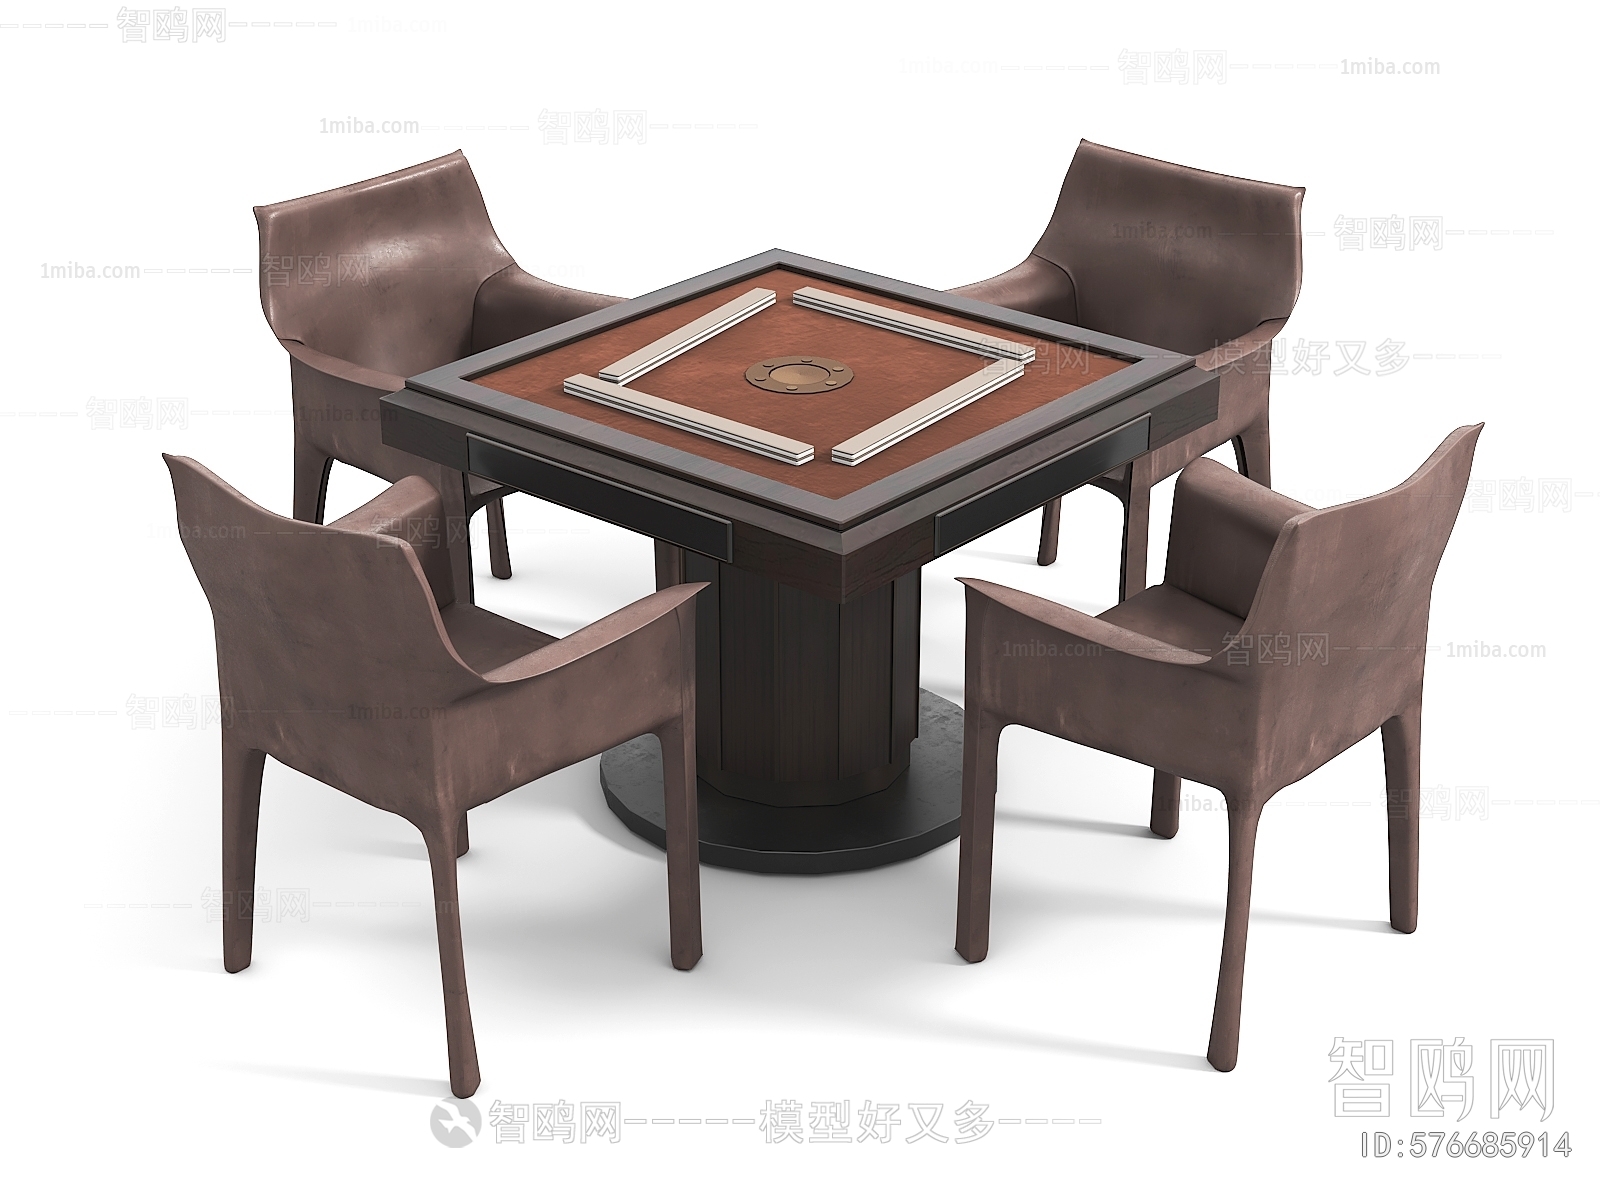 Wabi-sabi Style Mahjong Tables And Chairs